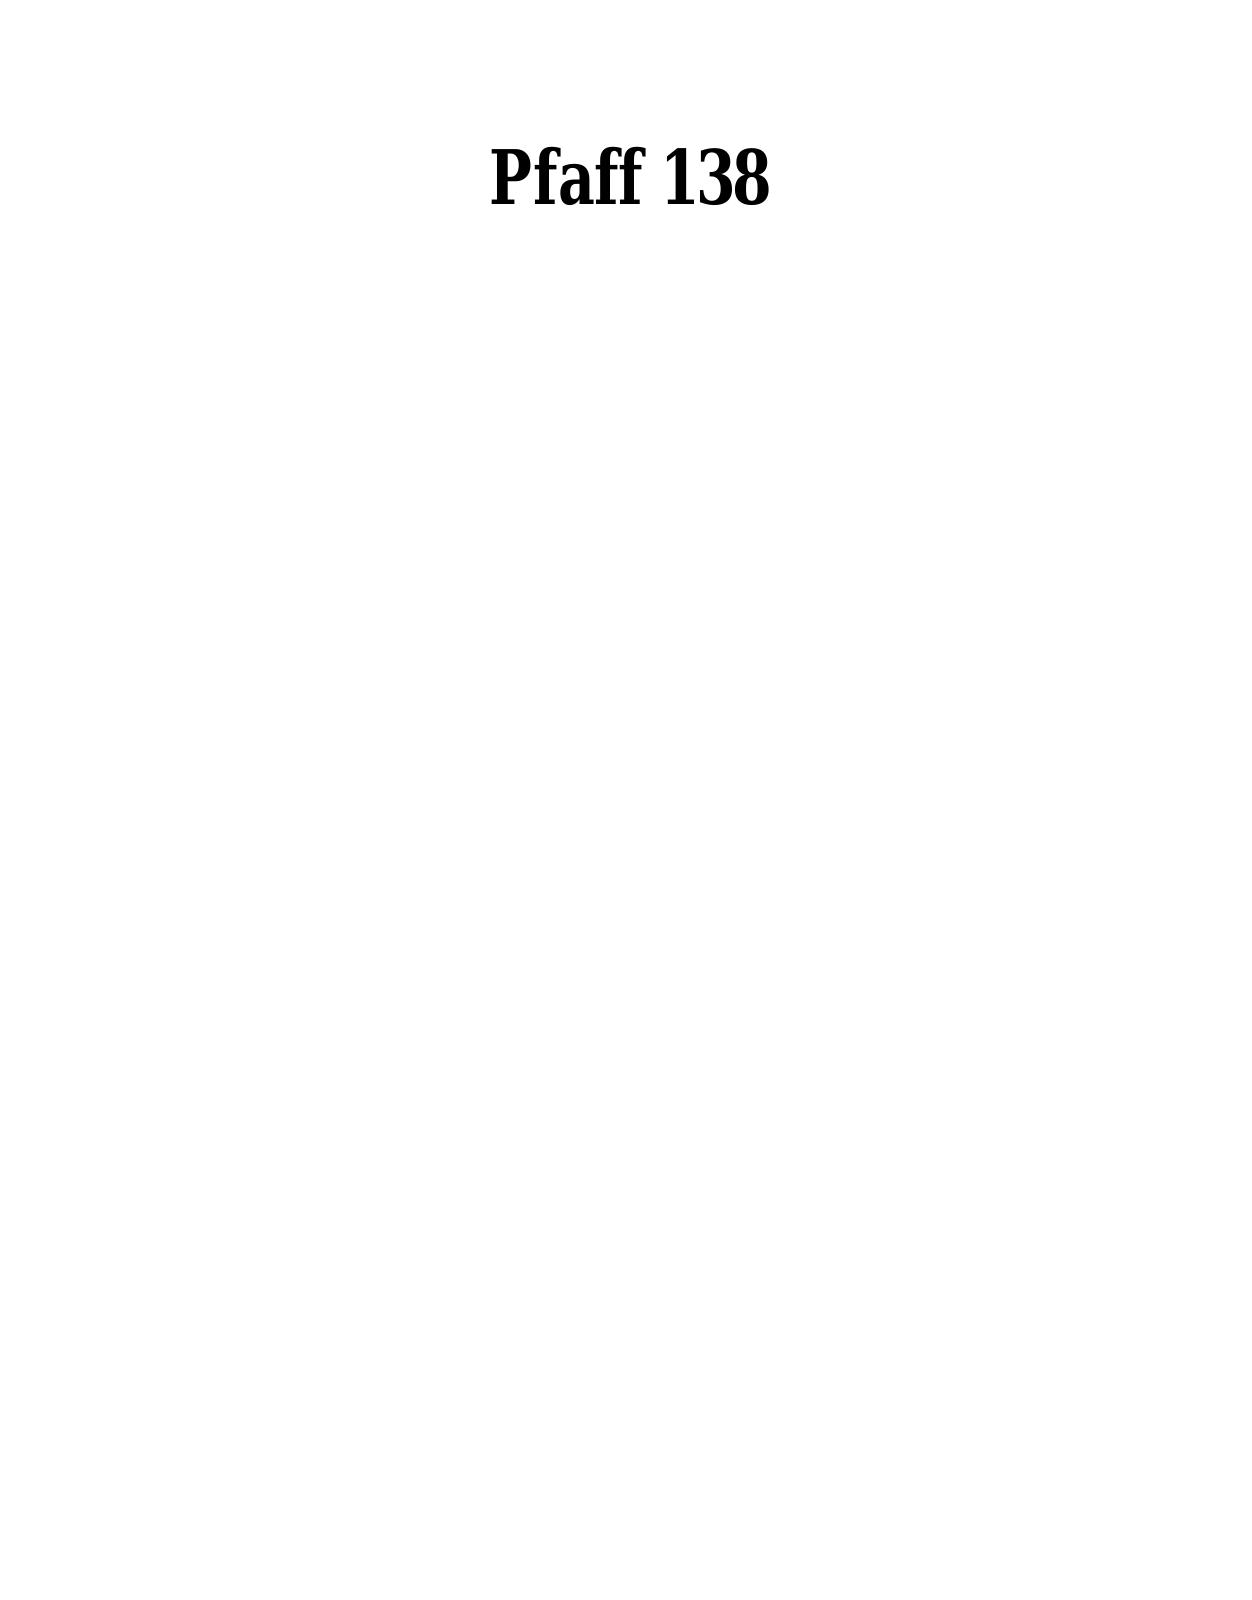 PFAFF 138 Parts List